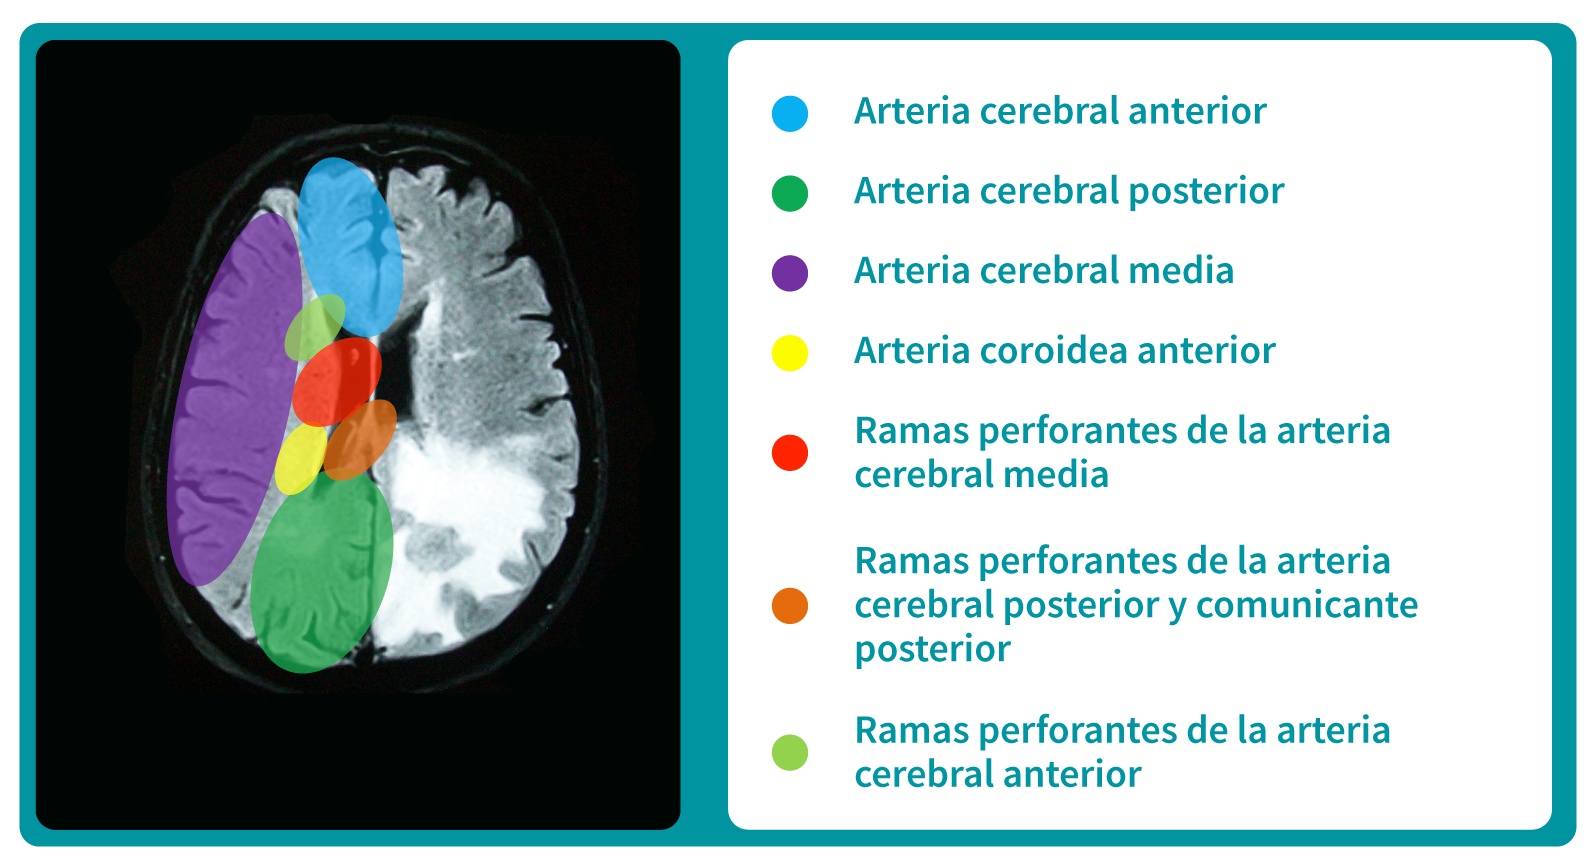 Corte transversal de cerebro humano, el circuito cerebral arterial y sus principales áreas de irrigación